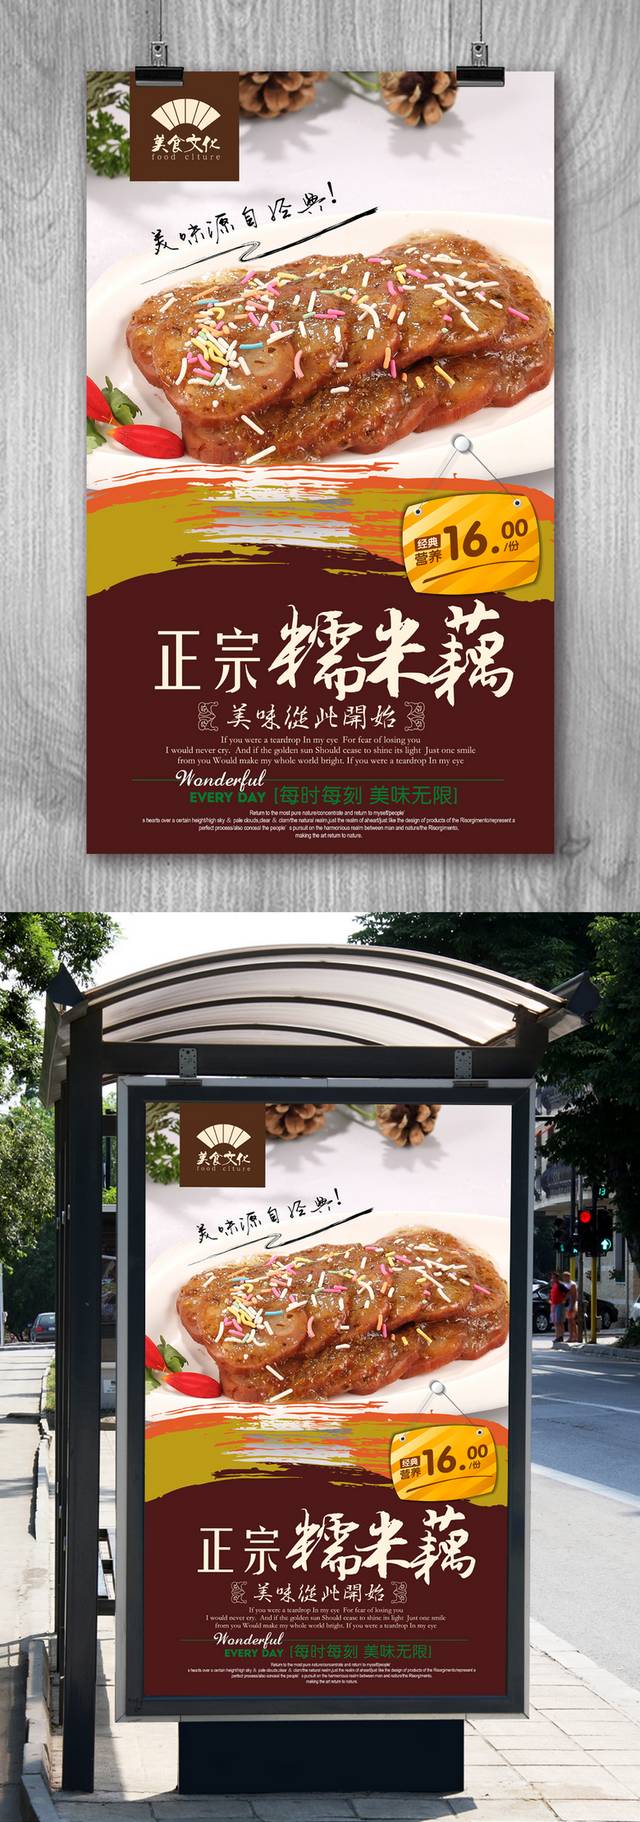 创意糯米藕宣传海报设计